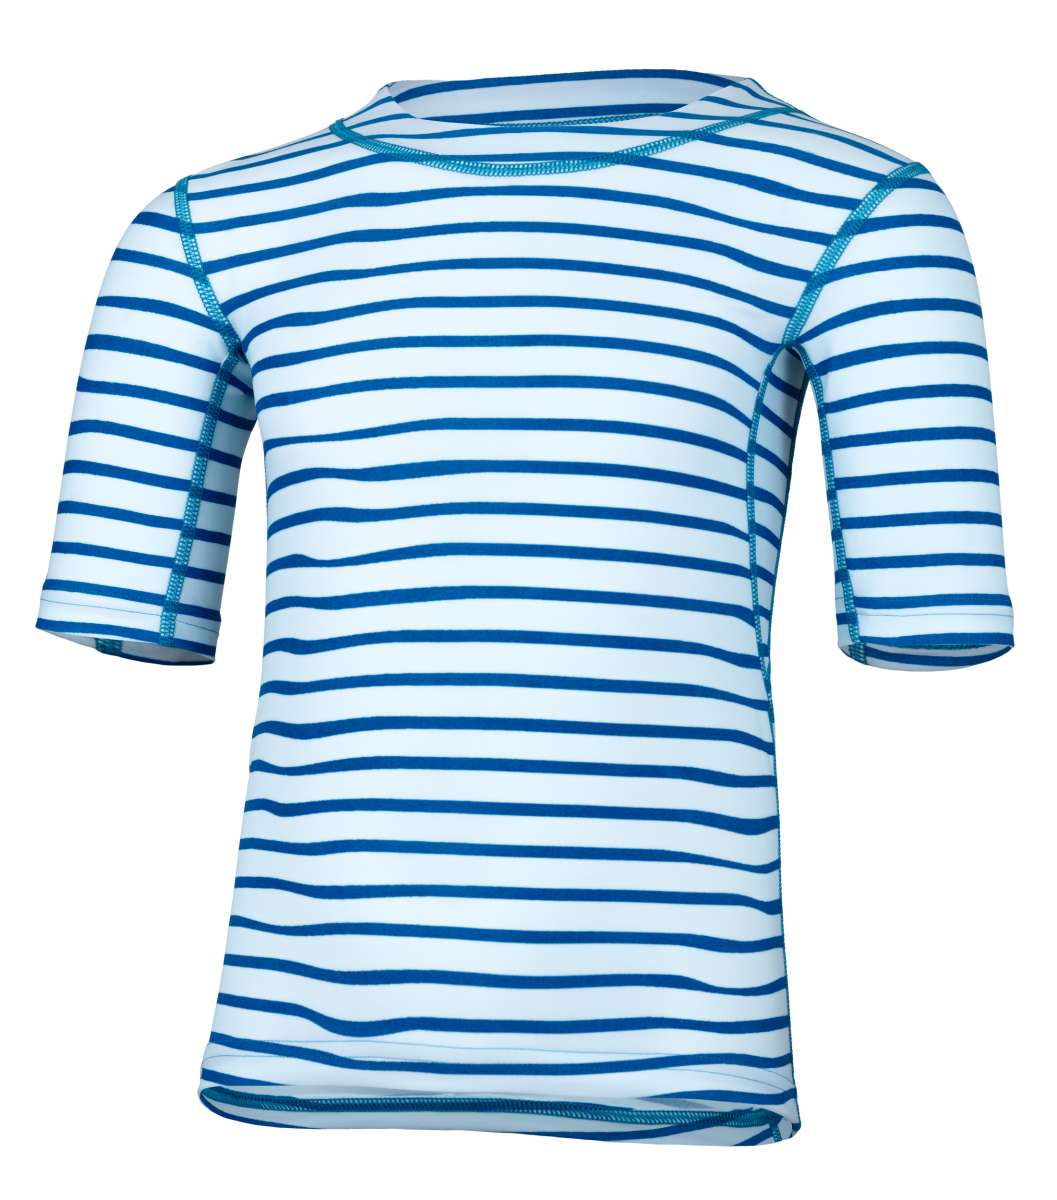 UV Shirt ’striped capri‘ front view 